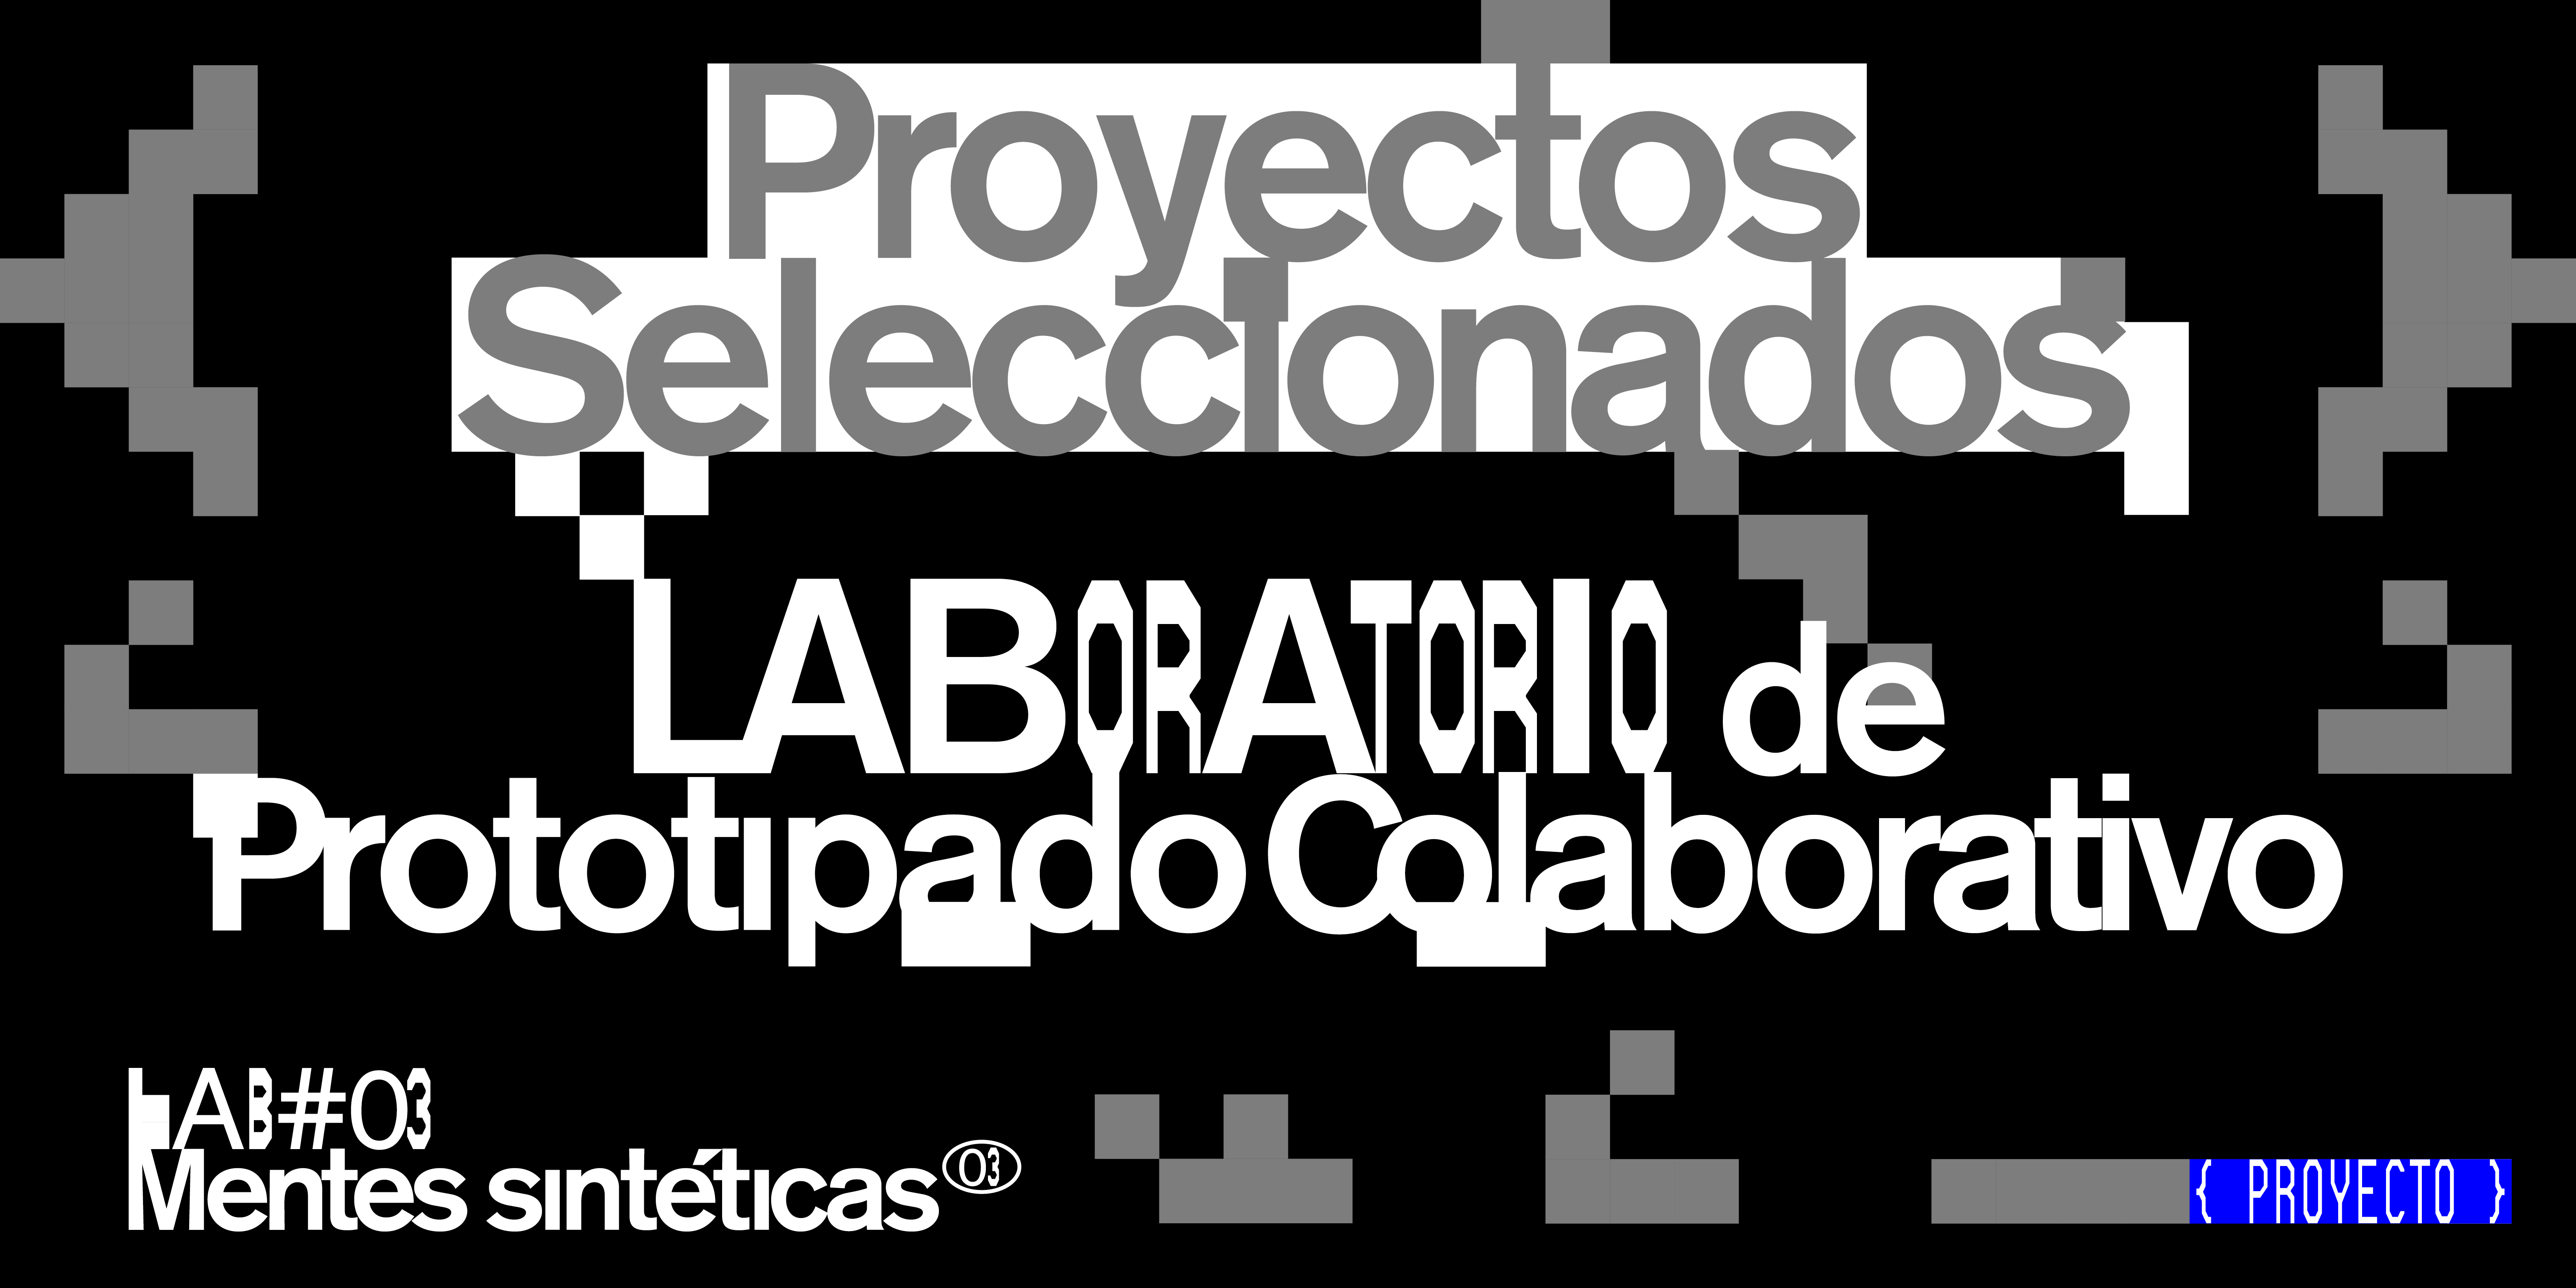 Laboratorio de Prototipado Colaborativo: proyectos seleccionados LAB#03